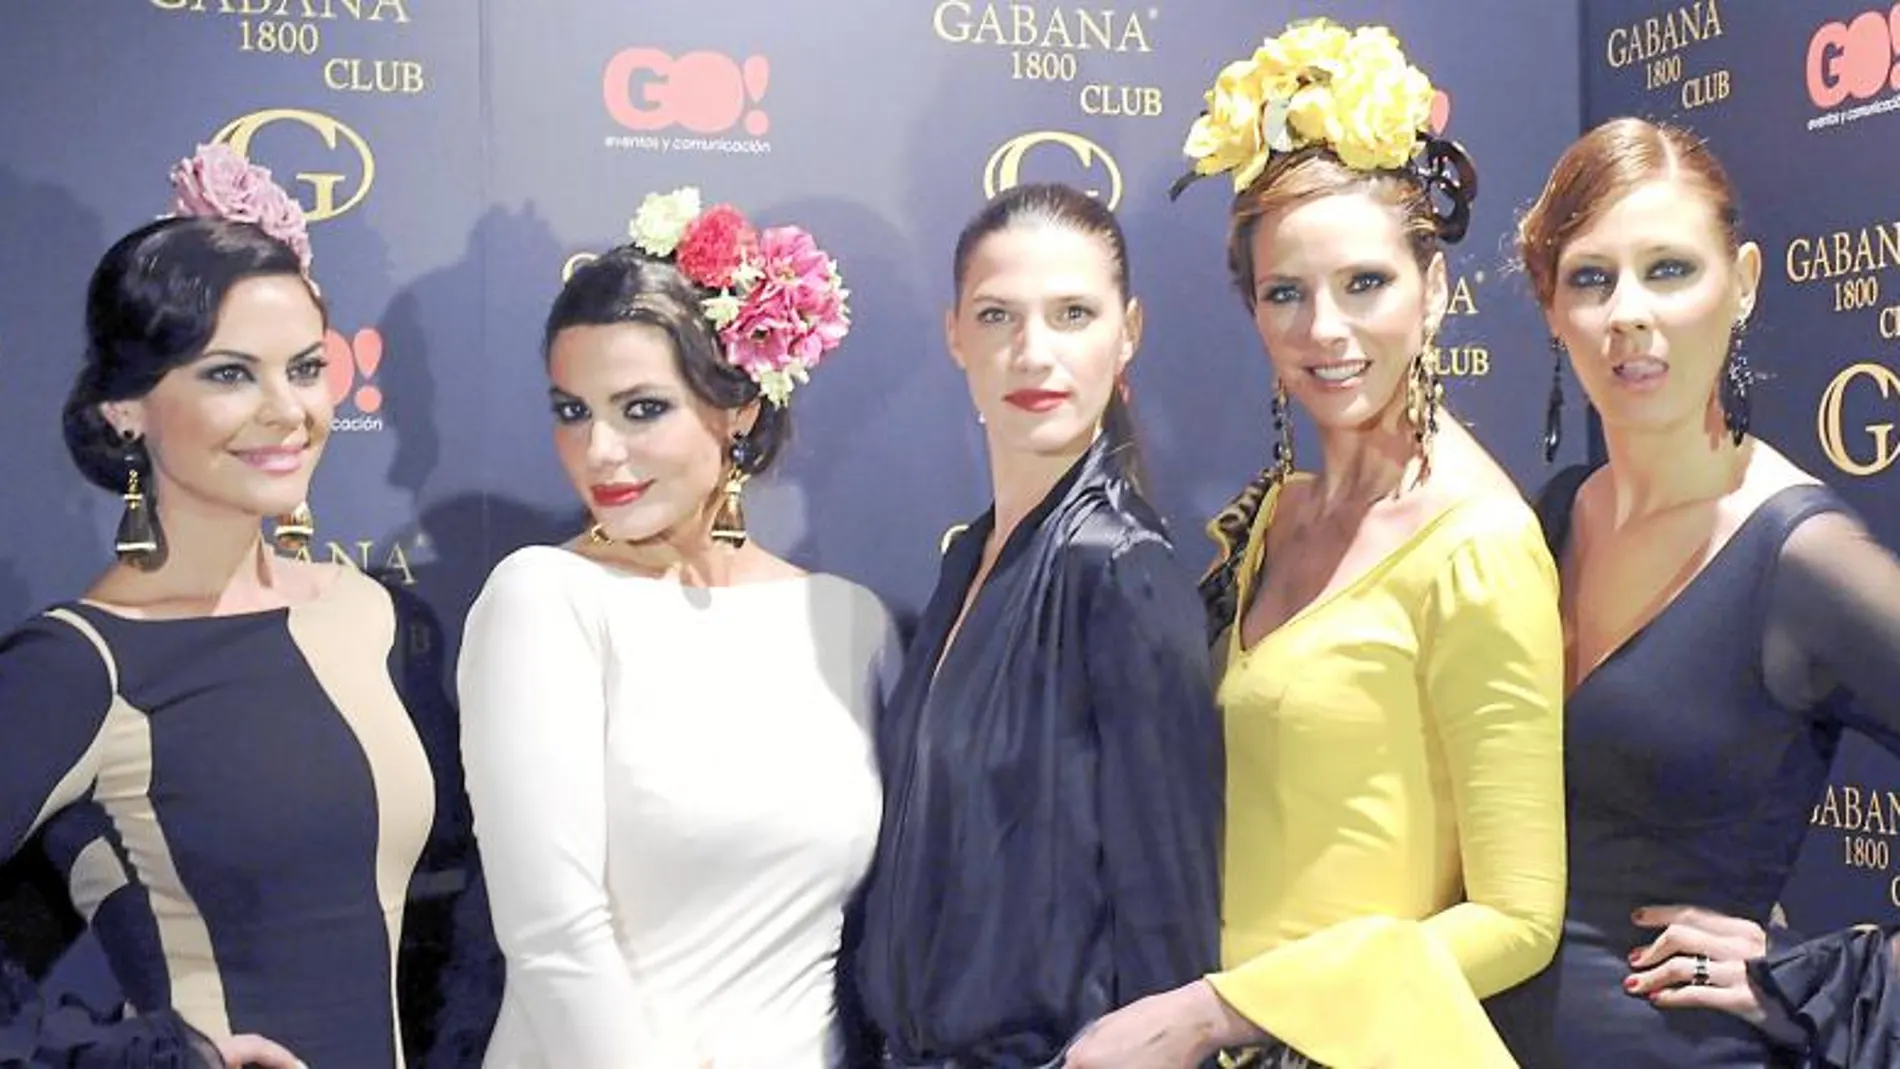 Las modelos María José Suárez, Marisa Jara, Laura Sánchez, Estefanía Luyk y Elisabeth Reyes, durante el desfile en Gabana